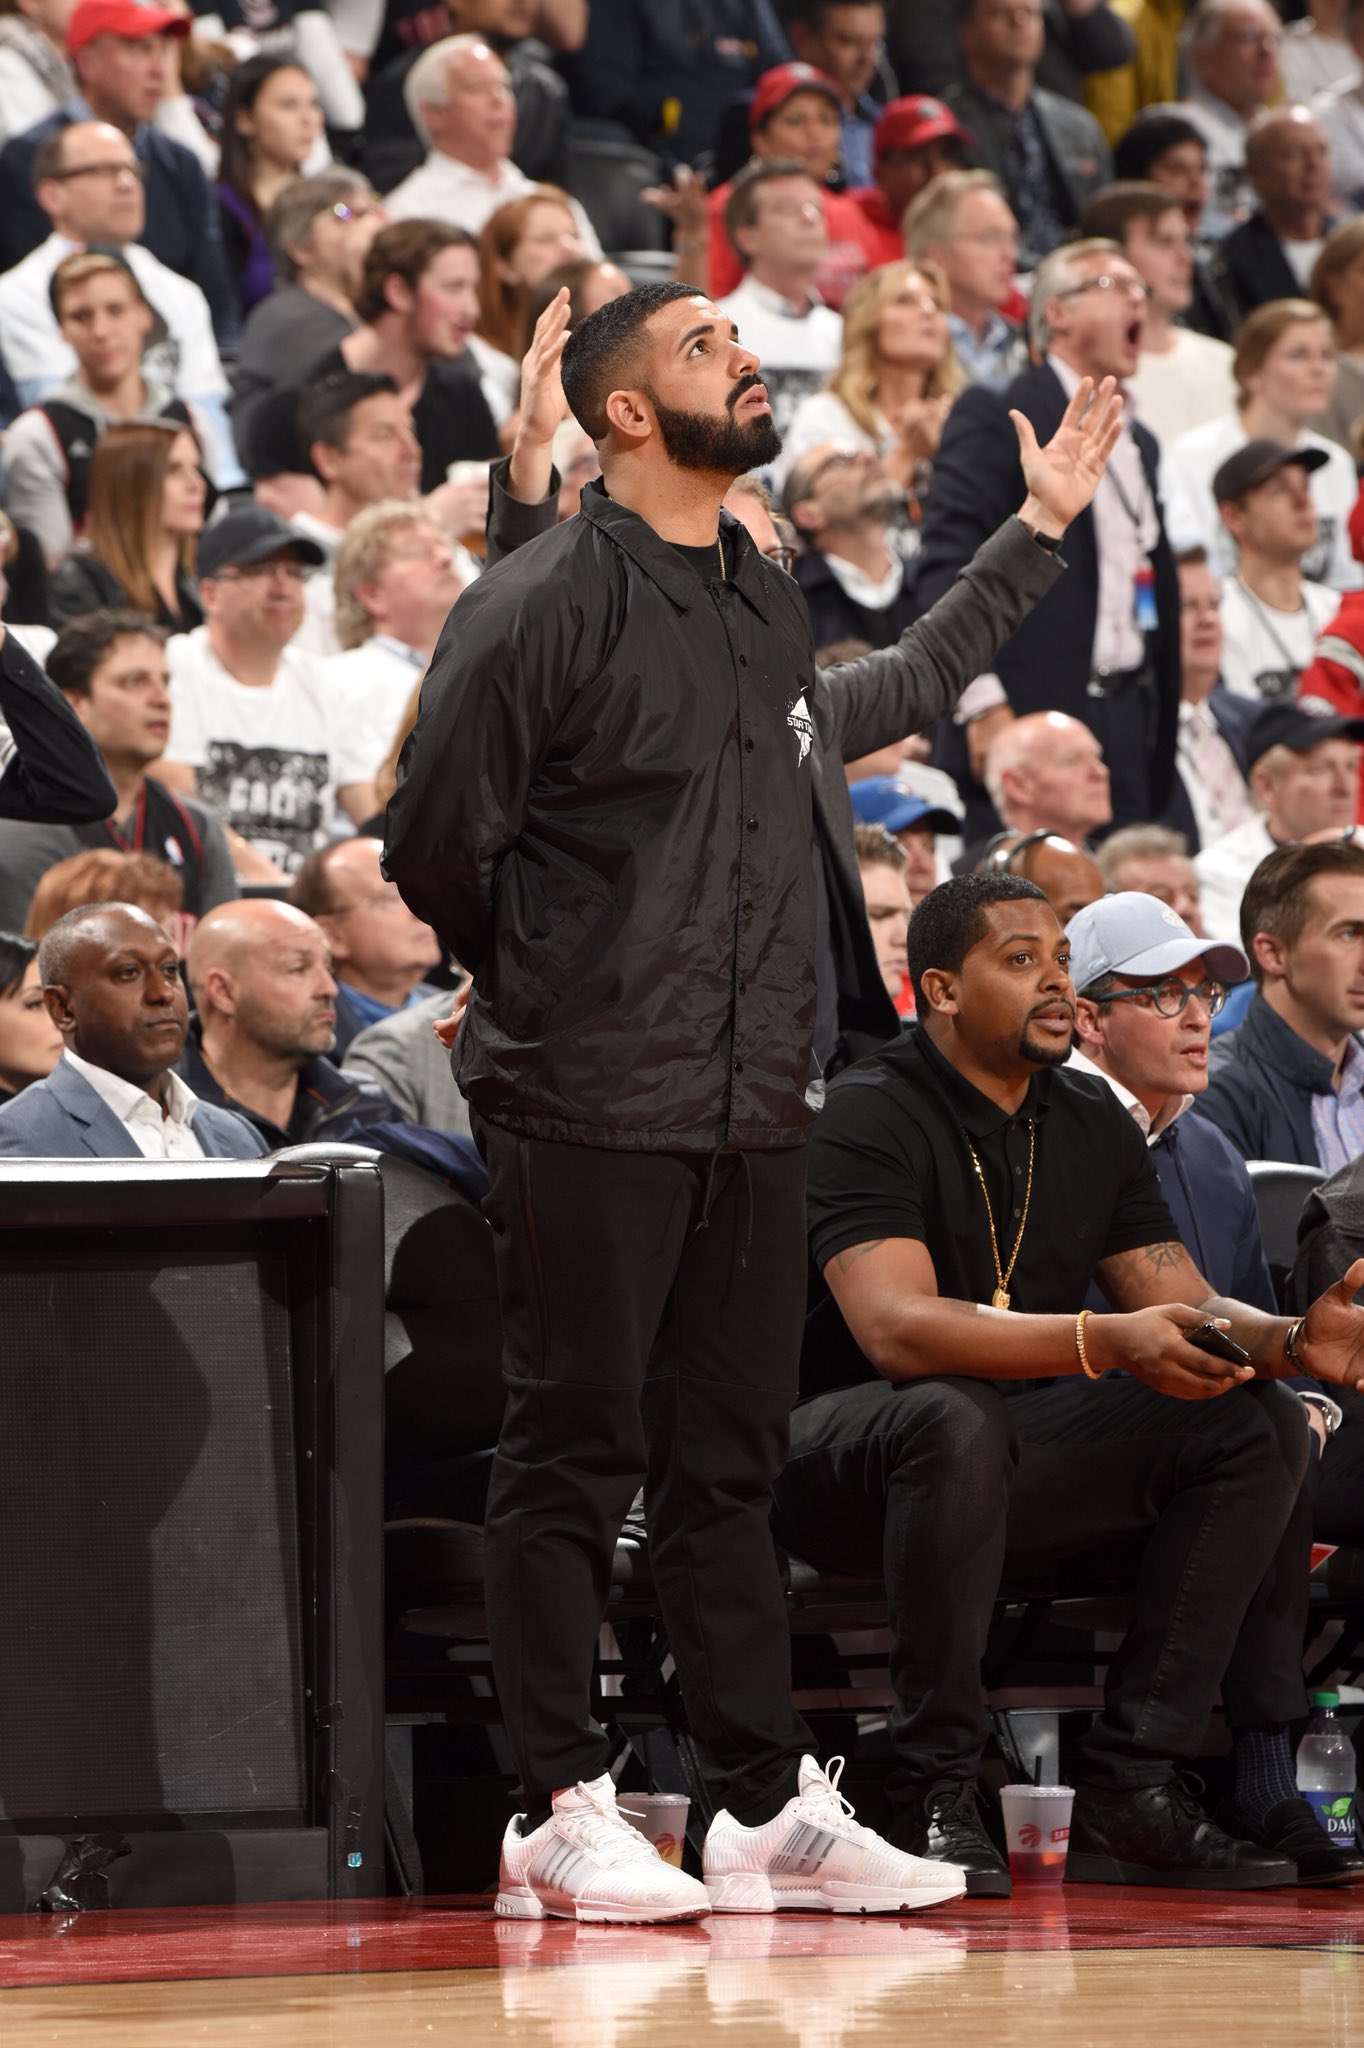 B/R Kicks "Drake in Toronto wearing the adidas 1 for Game 5 https://t.co/hqxPyrVag7" / Twitter